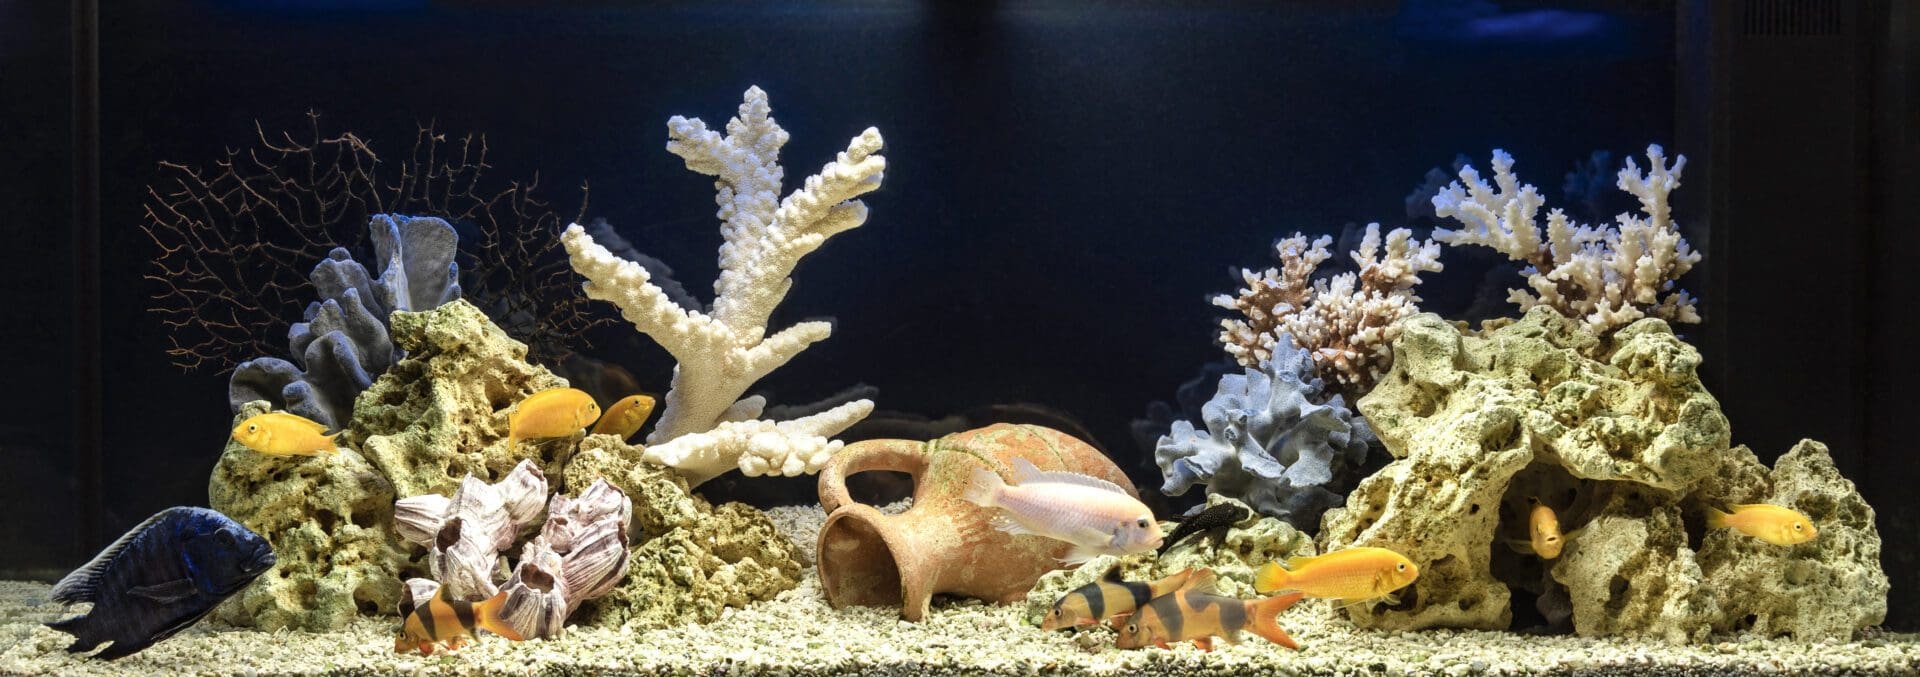 Beste aquarium